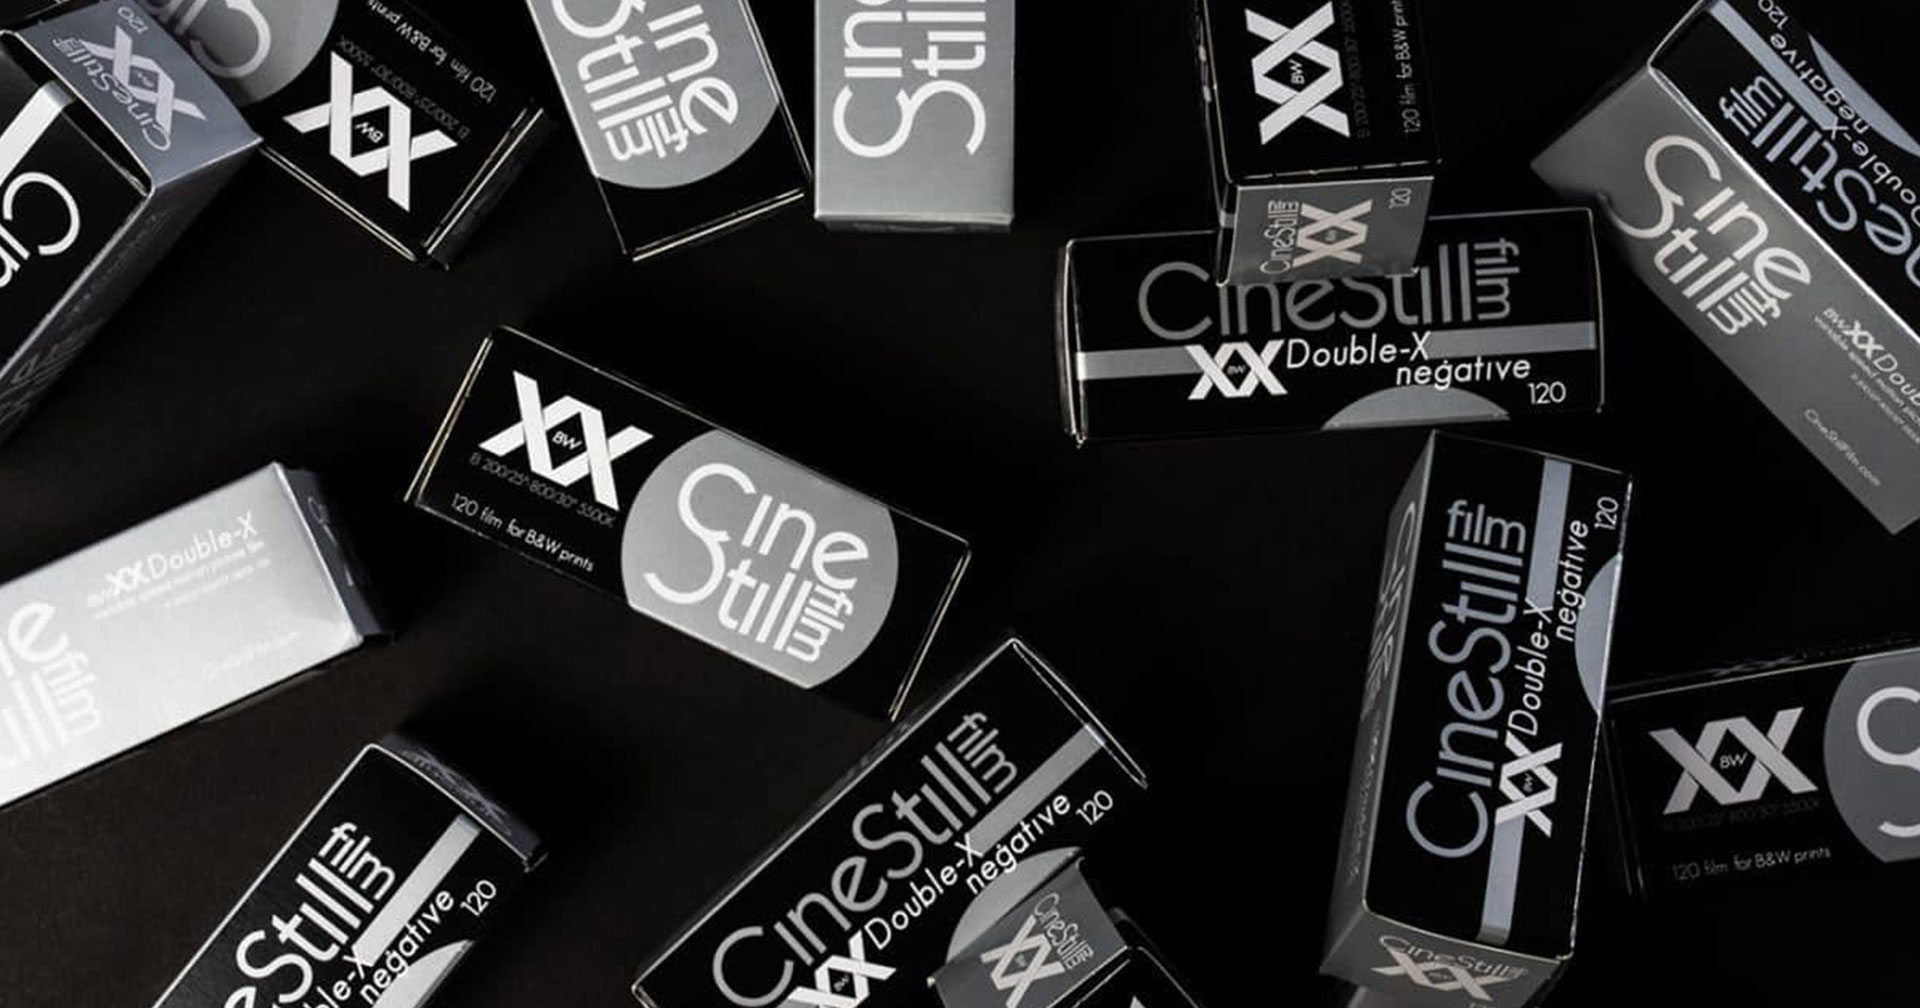 CineStill เปิดตัวฟิล์มหนังขาวดำ ‘BwXX 120’ สำหรับกล้องมีเดียมฟอร์แมตสุดคลาสสิก